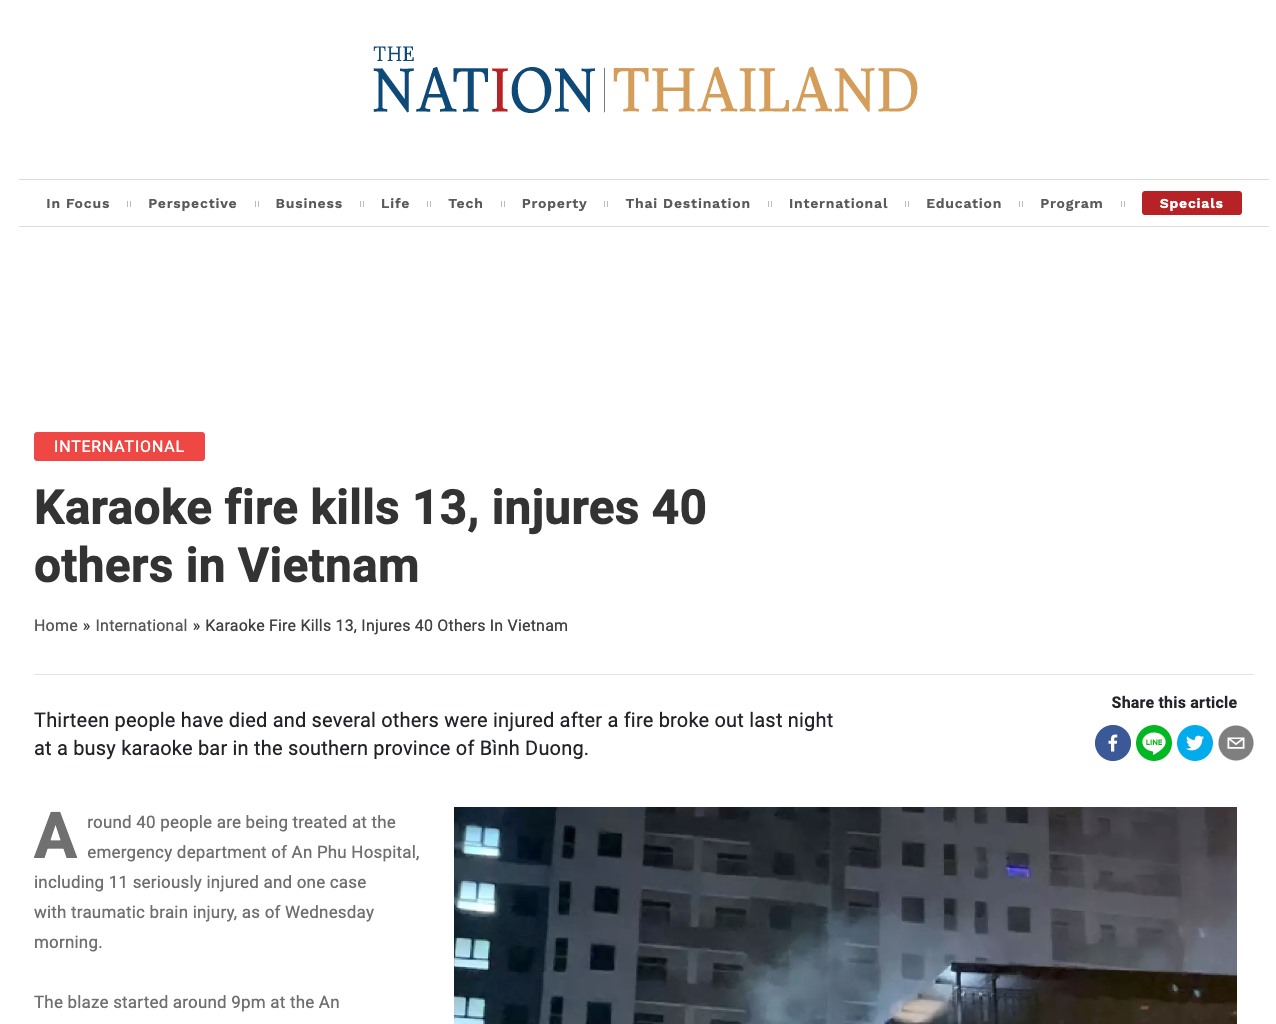 Bài viết trên tờ The Nation Thailand về vụ cháy quán karaoke ở Bình Dương. Ảnh chụp màn hình